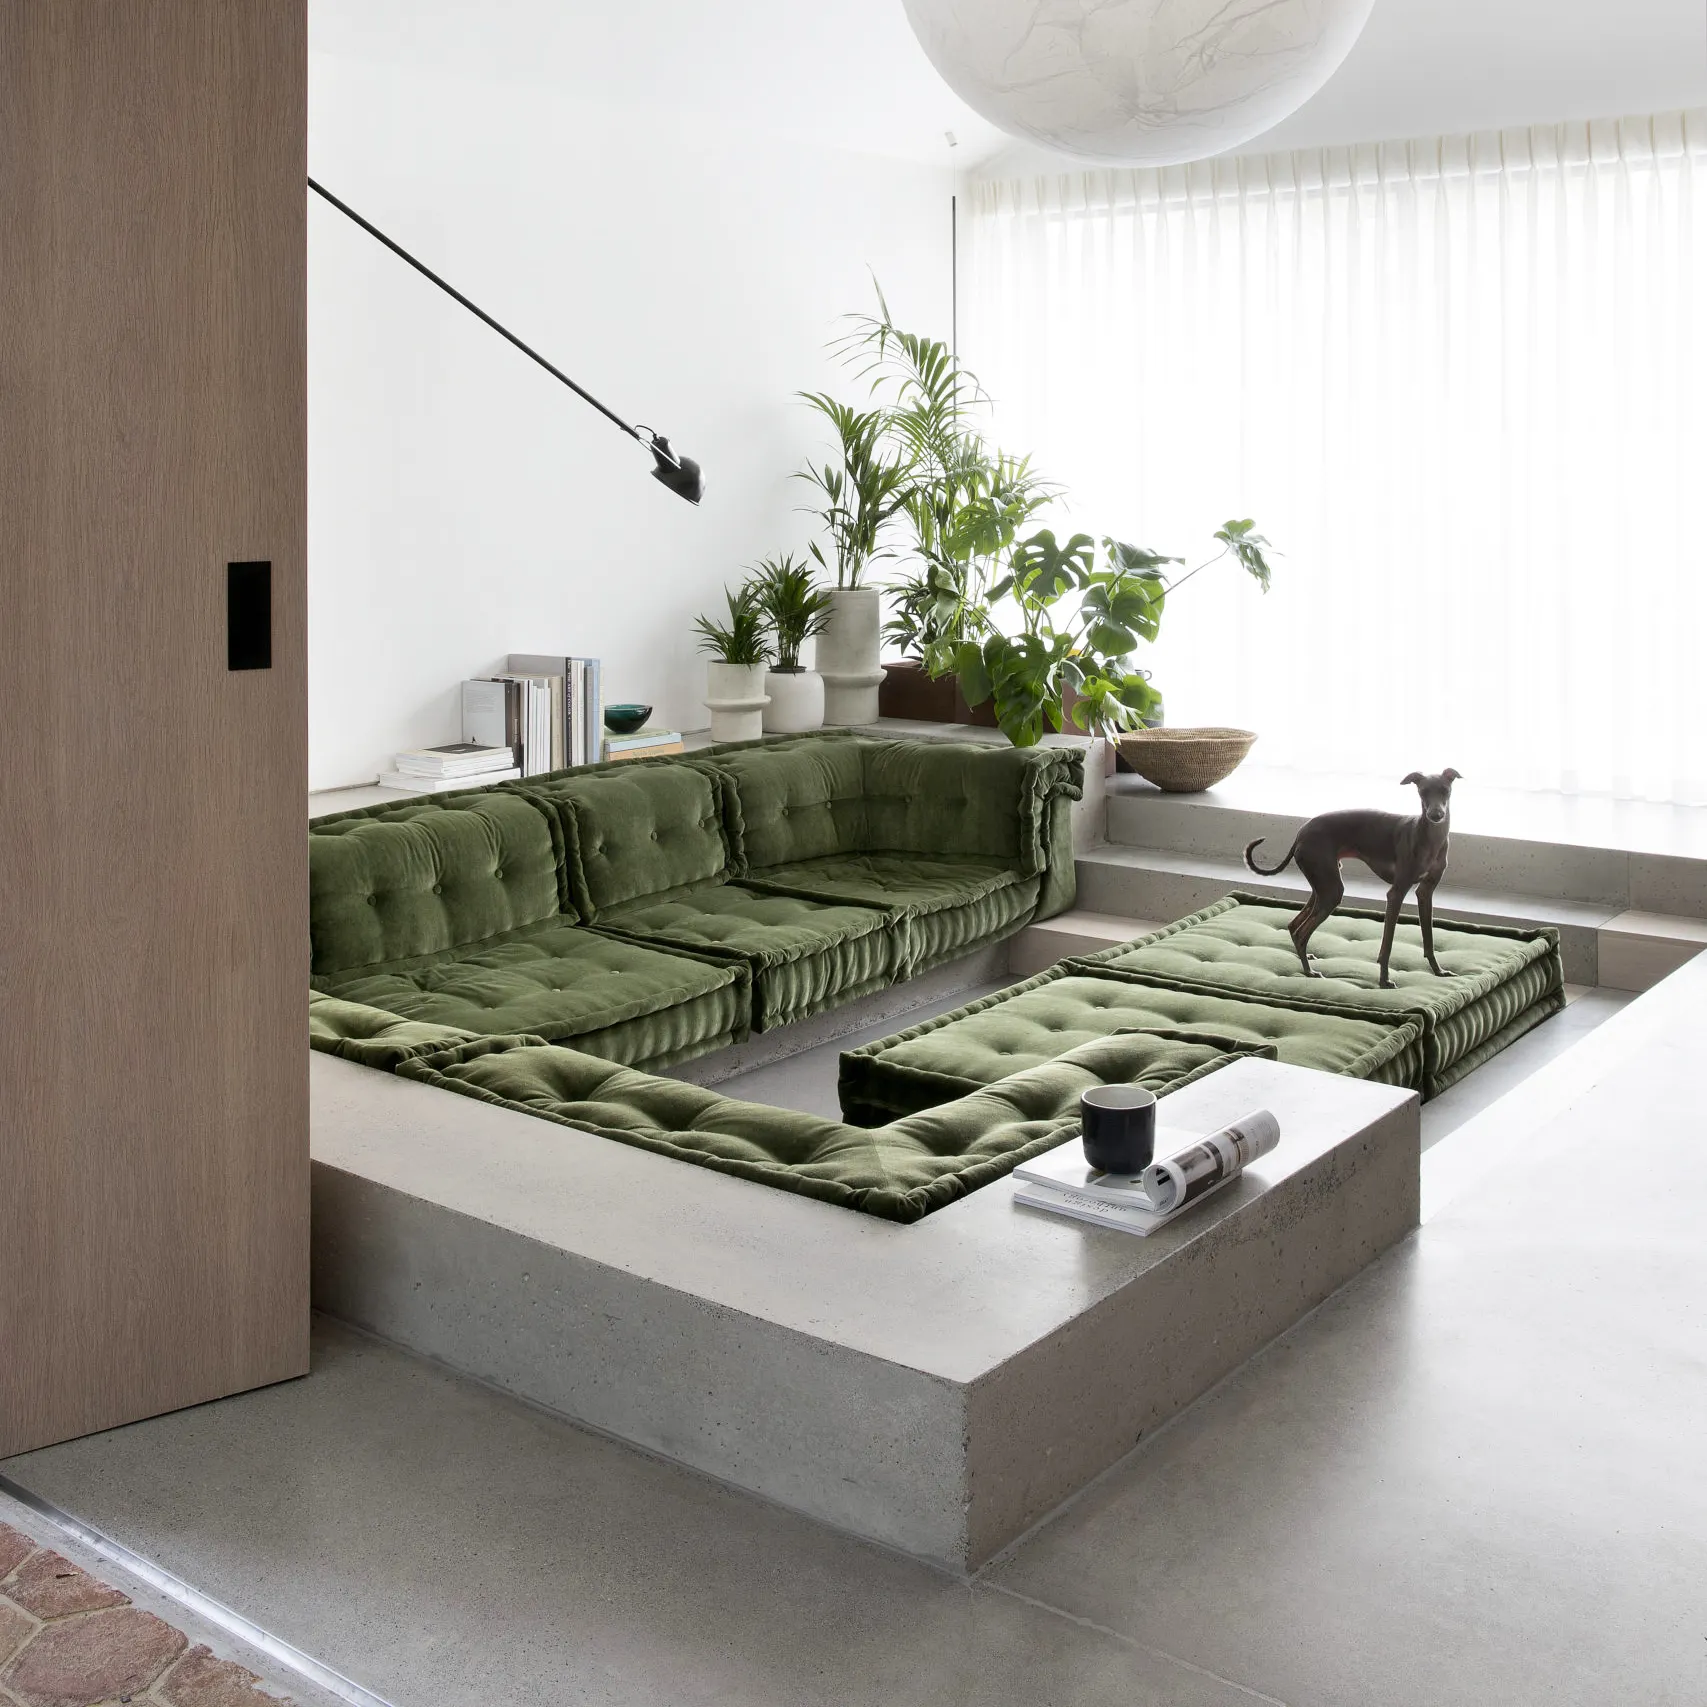 ATUNUS modularizzazione tessuti pavimento Mah Jong divano in stile arabiano modulare sezionale nordico soggiorno Mahjong divano divano